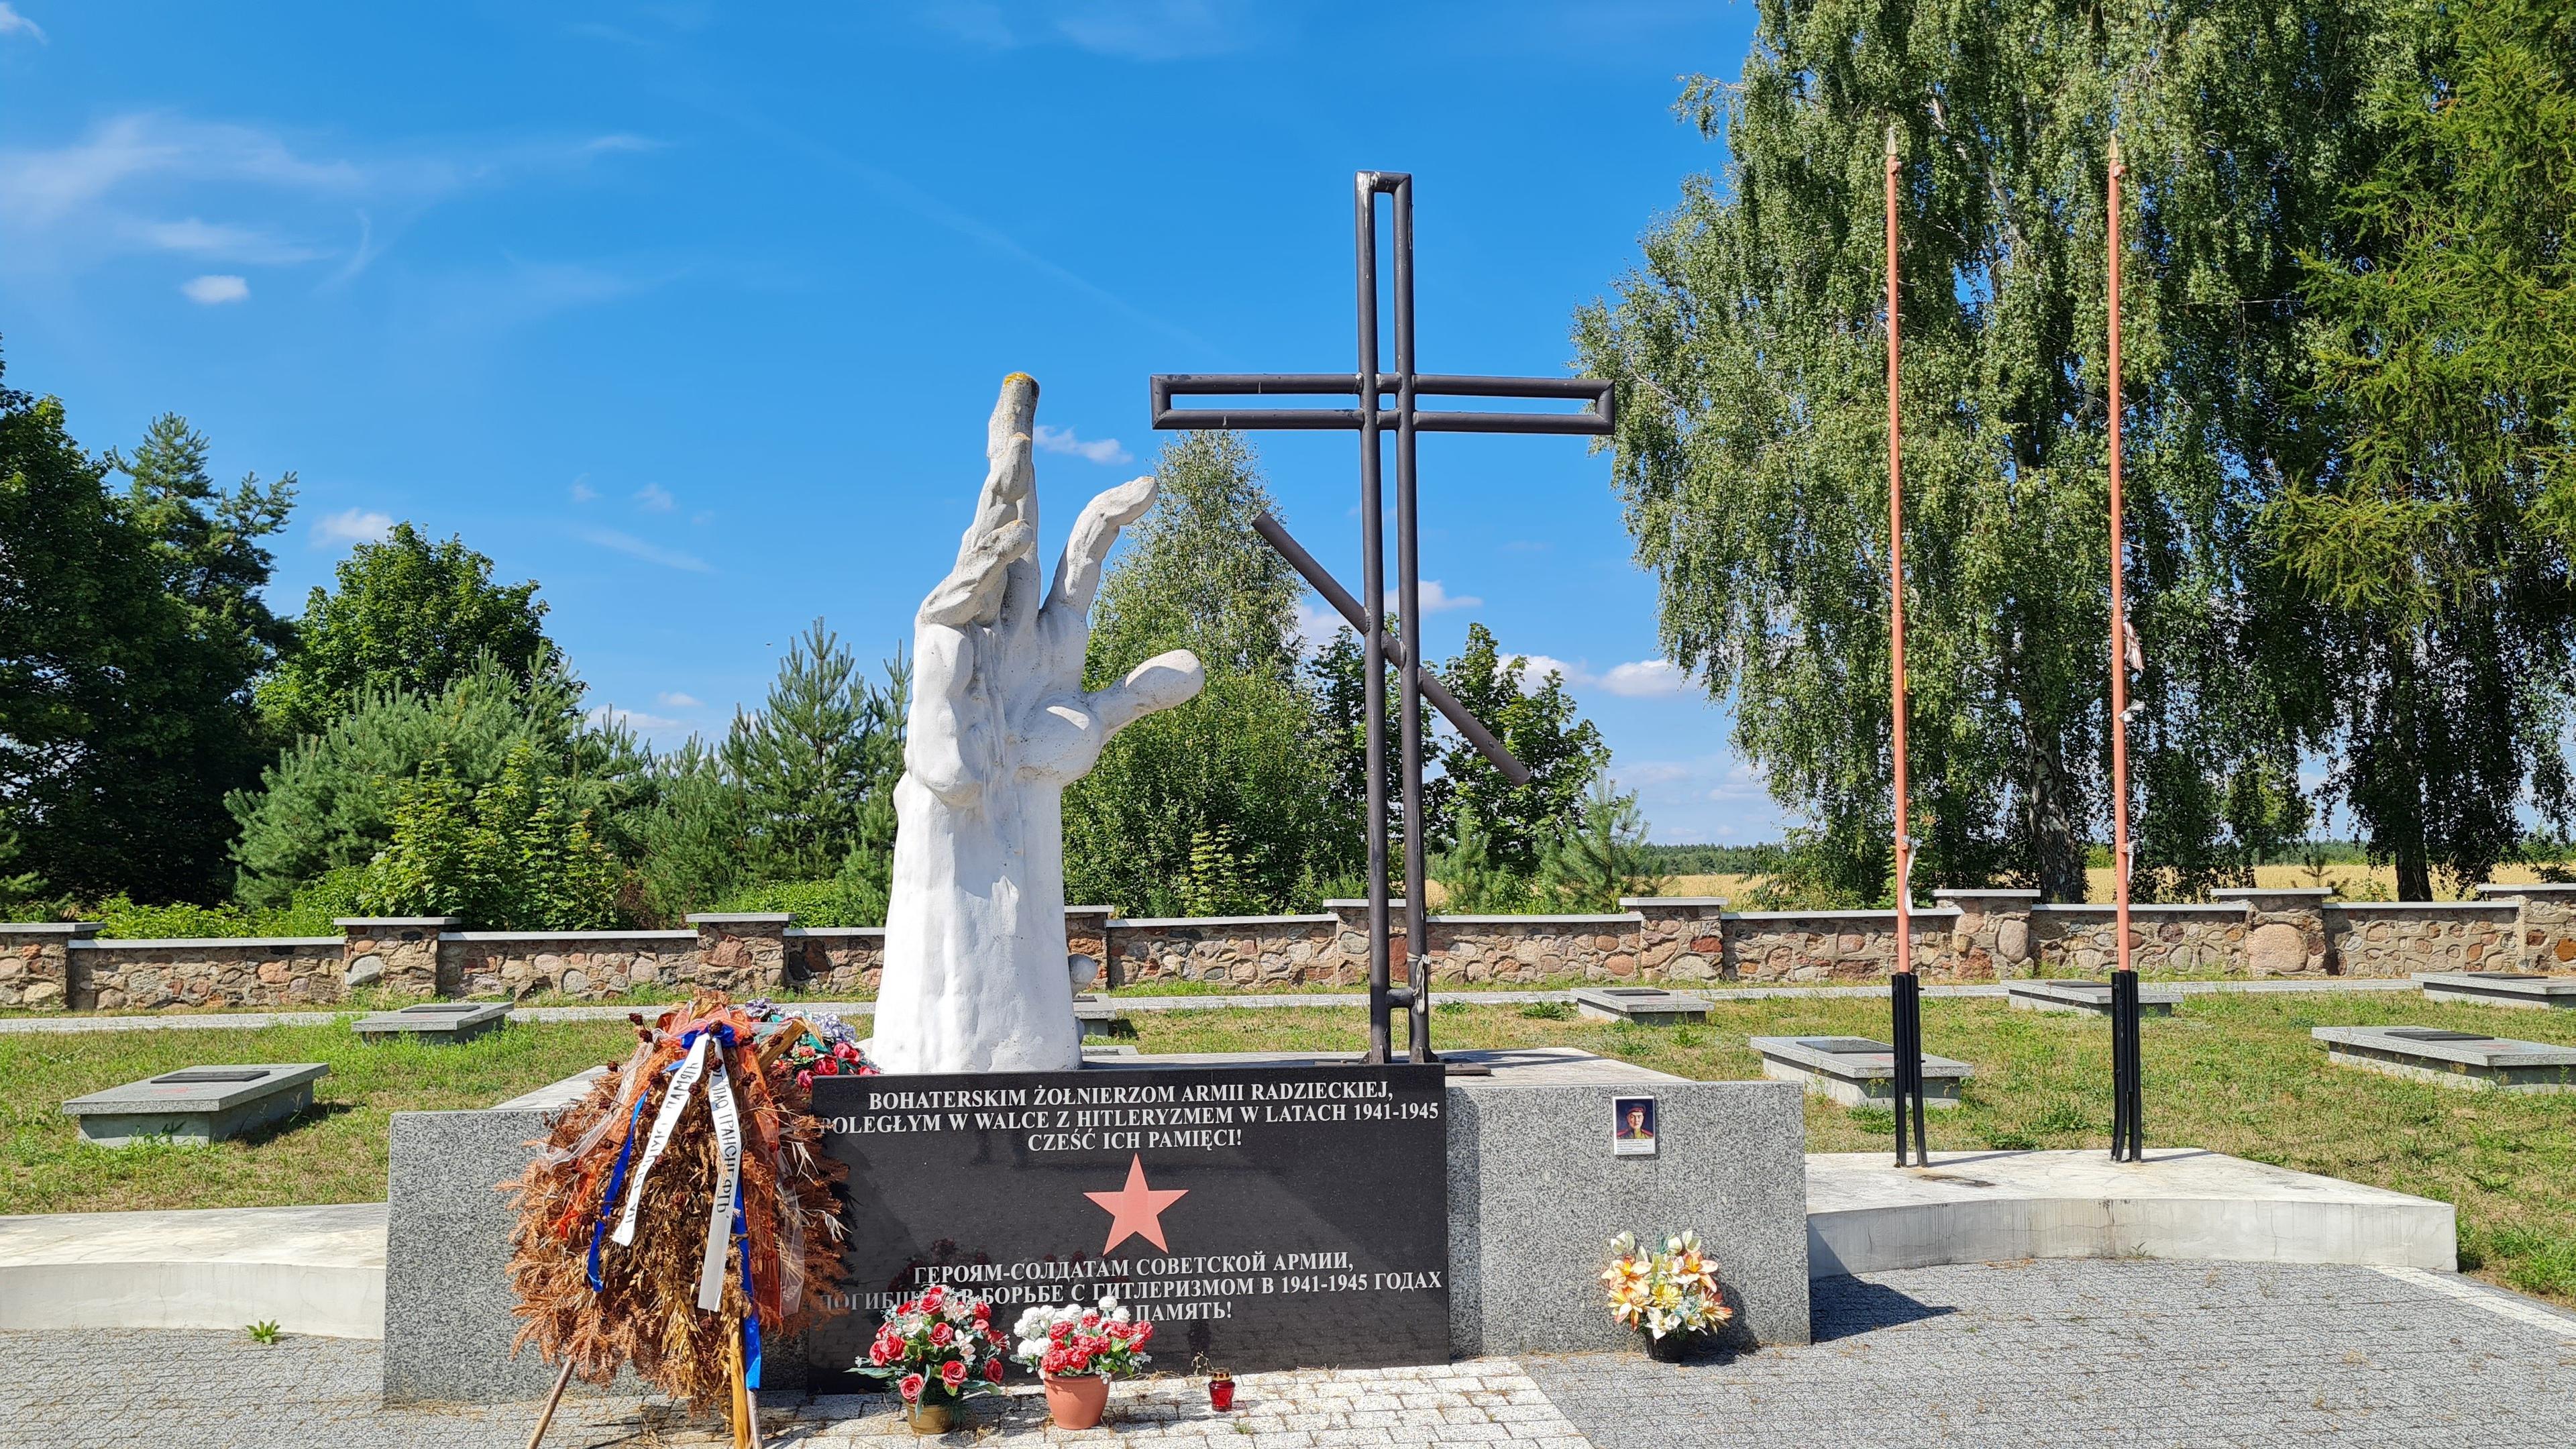 Pomnik na cmentarzu żołnierzy radzieckich przedstawiający złożone dłonie, krzyż prawosławny, na postumencie czerwona gwiazda oraz napis „Bohaterskim żołnierzom radzieckim poległym w walce z hitleryzmem w latach 1941-1945”